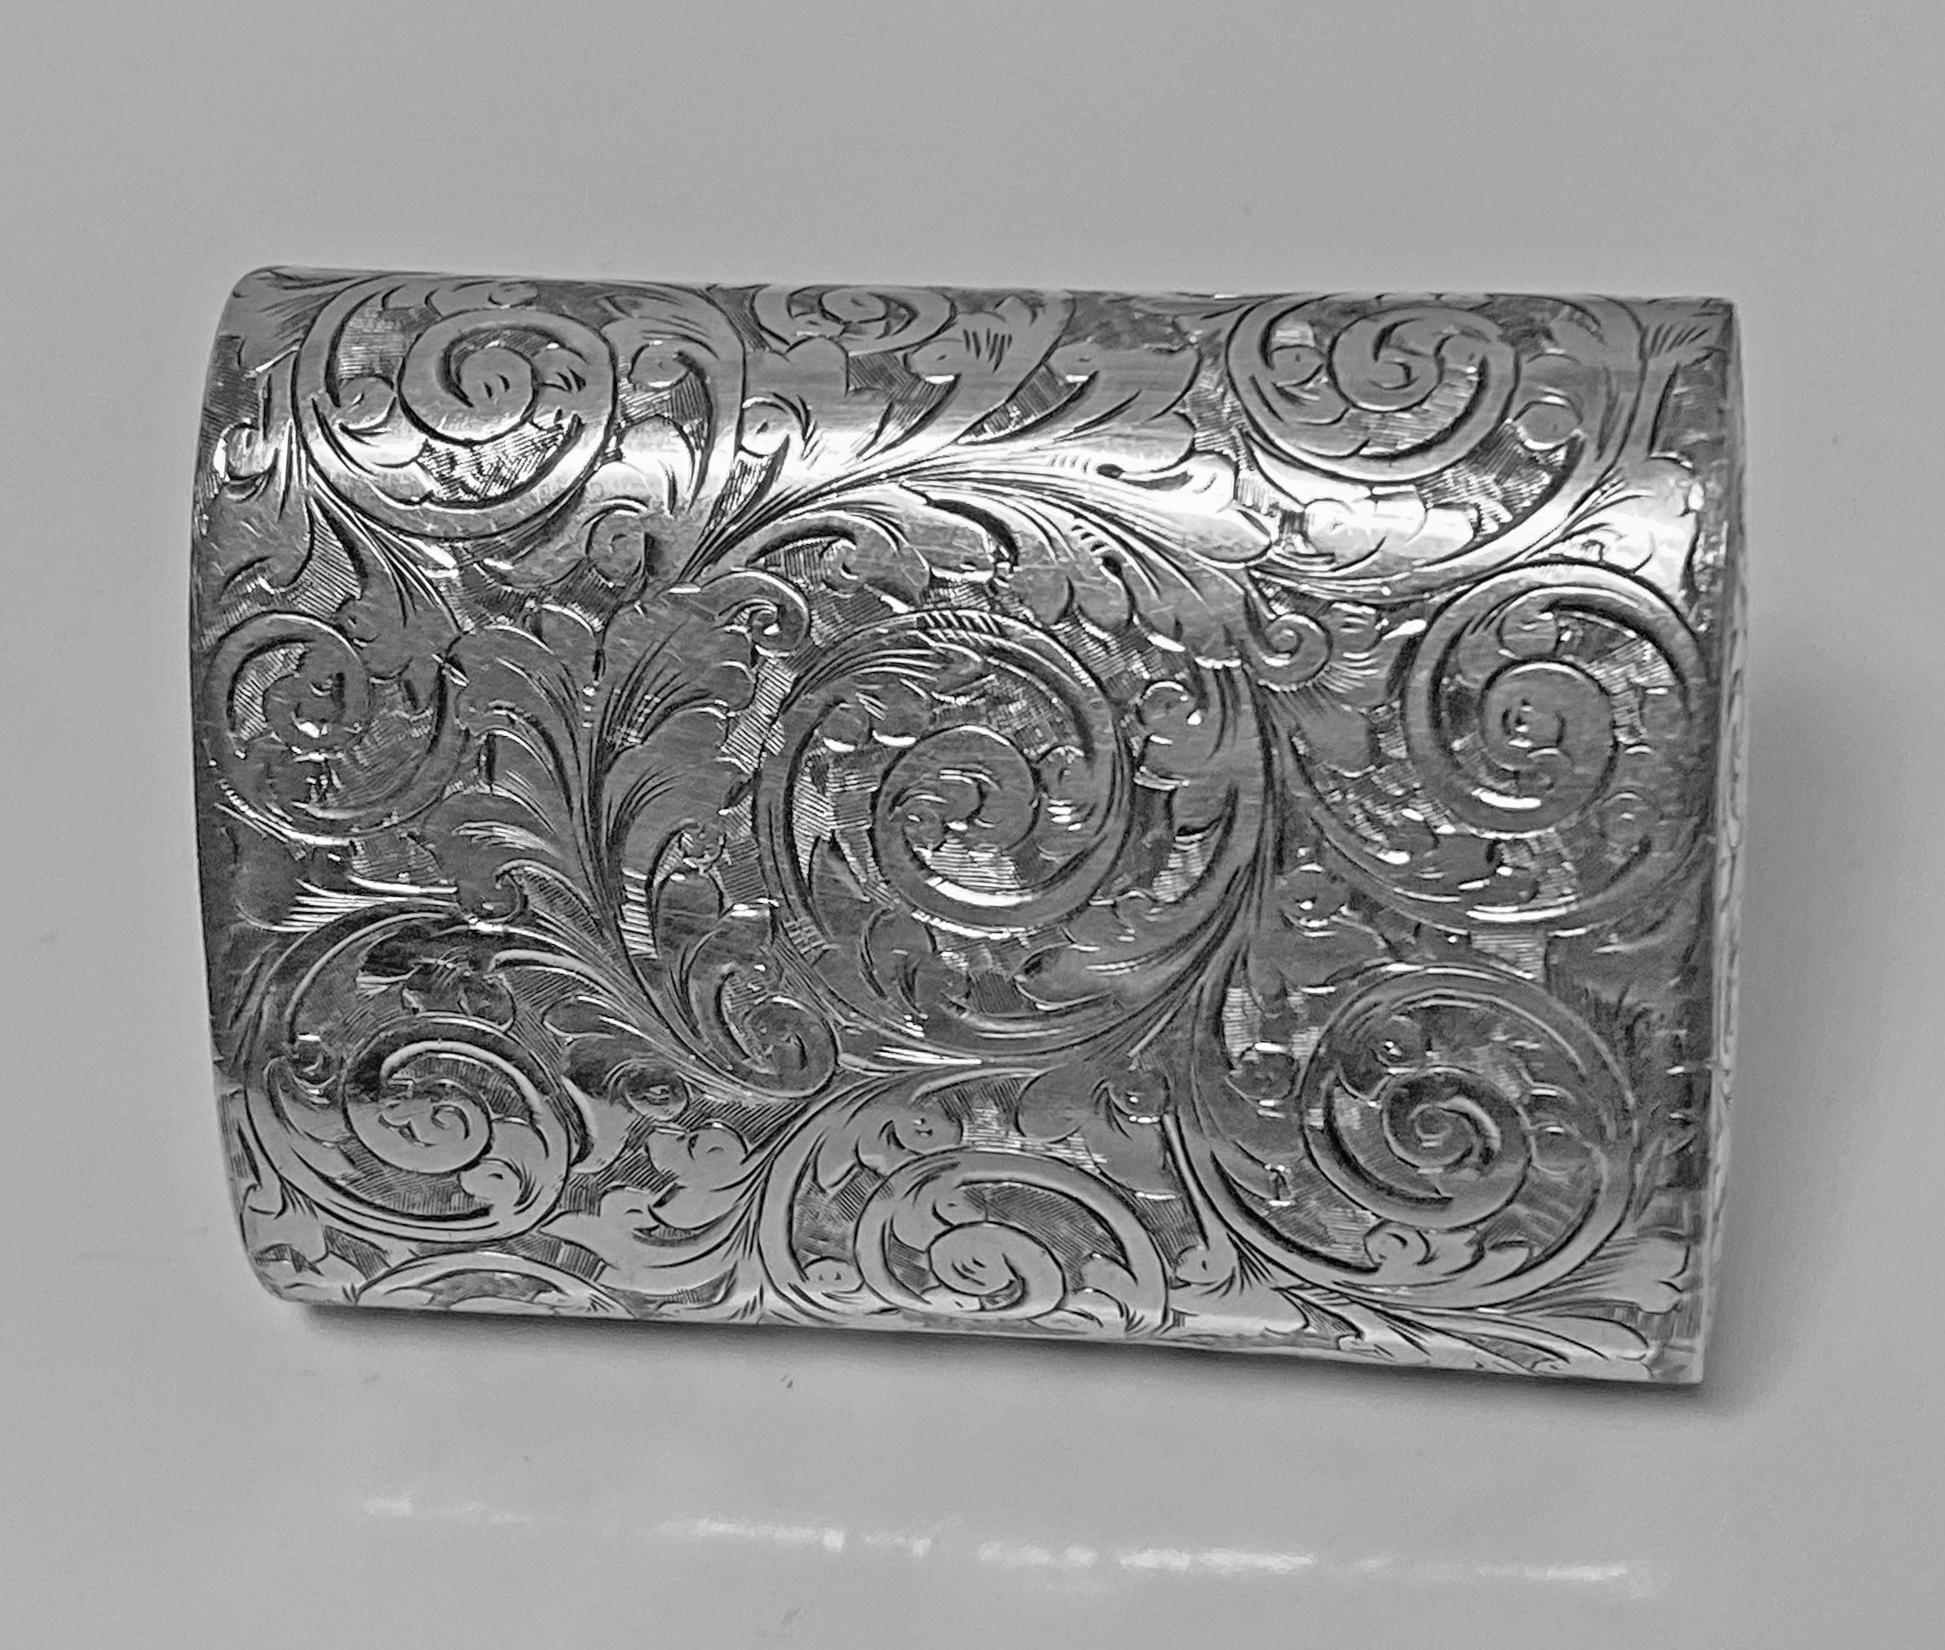 19th Century Rare Silver Vesta Case in form of clutch Purse Birmingham 1892 Thomas Hayes